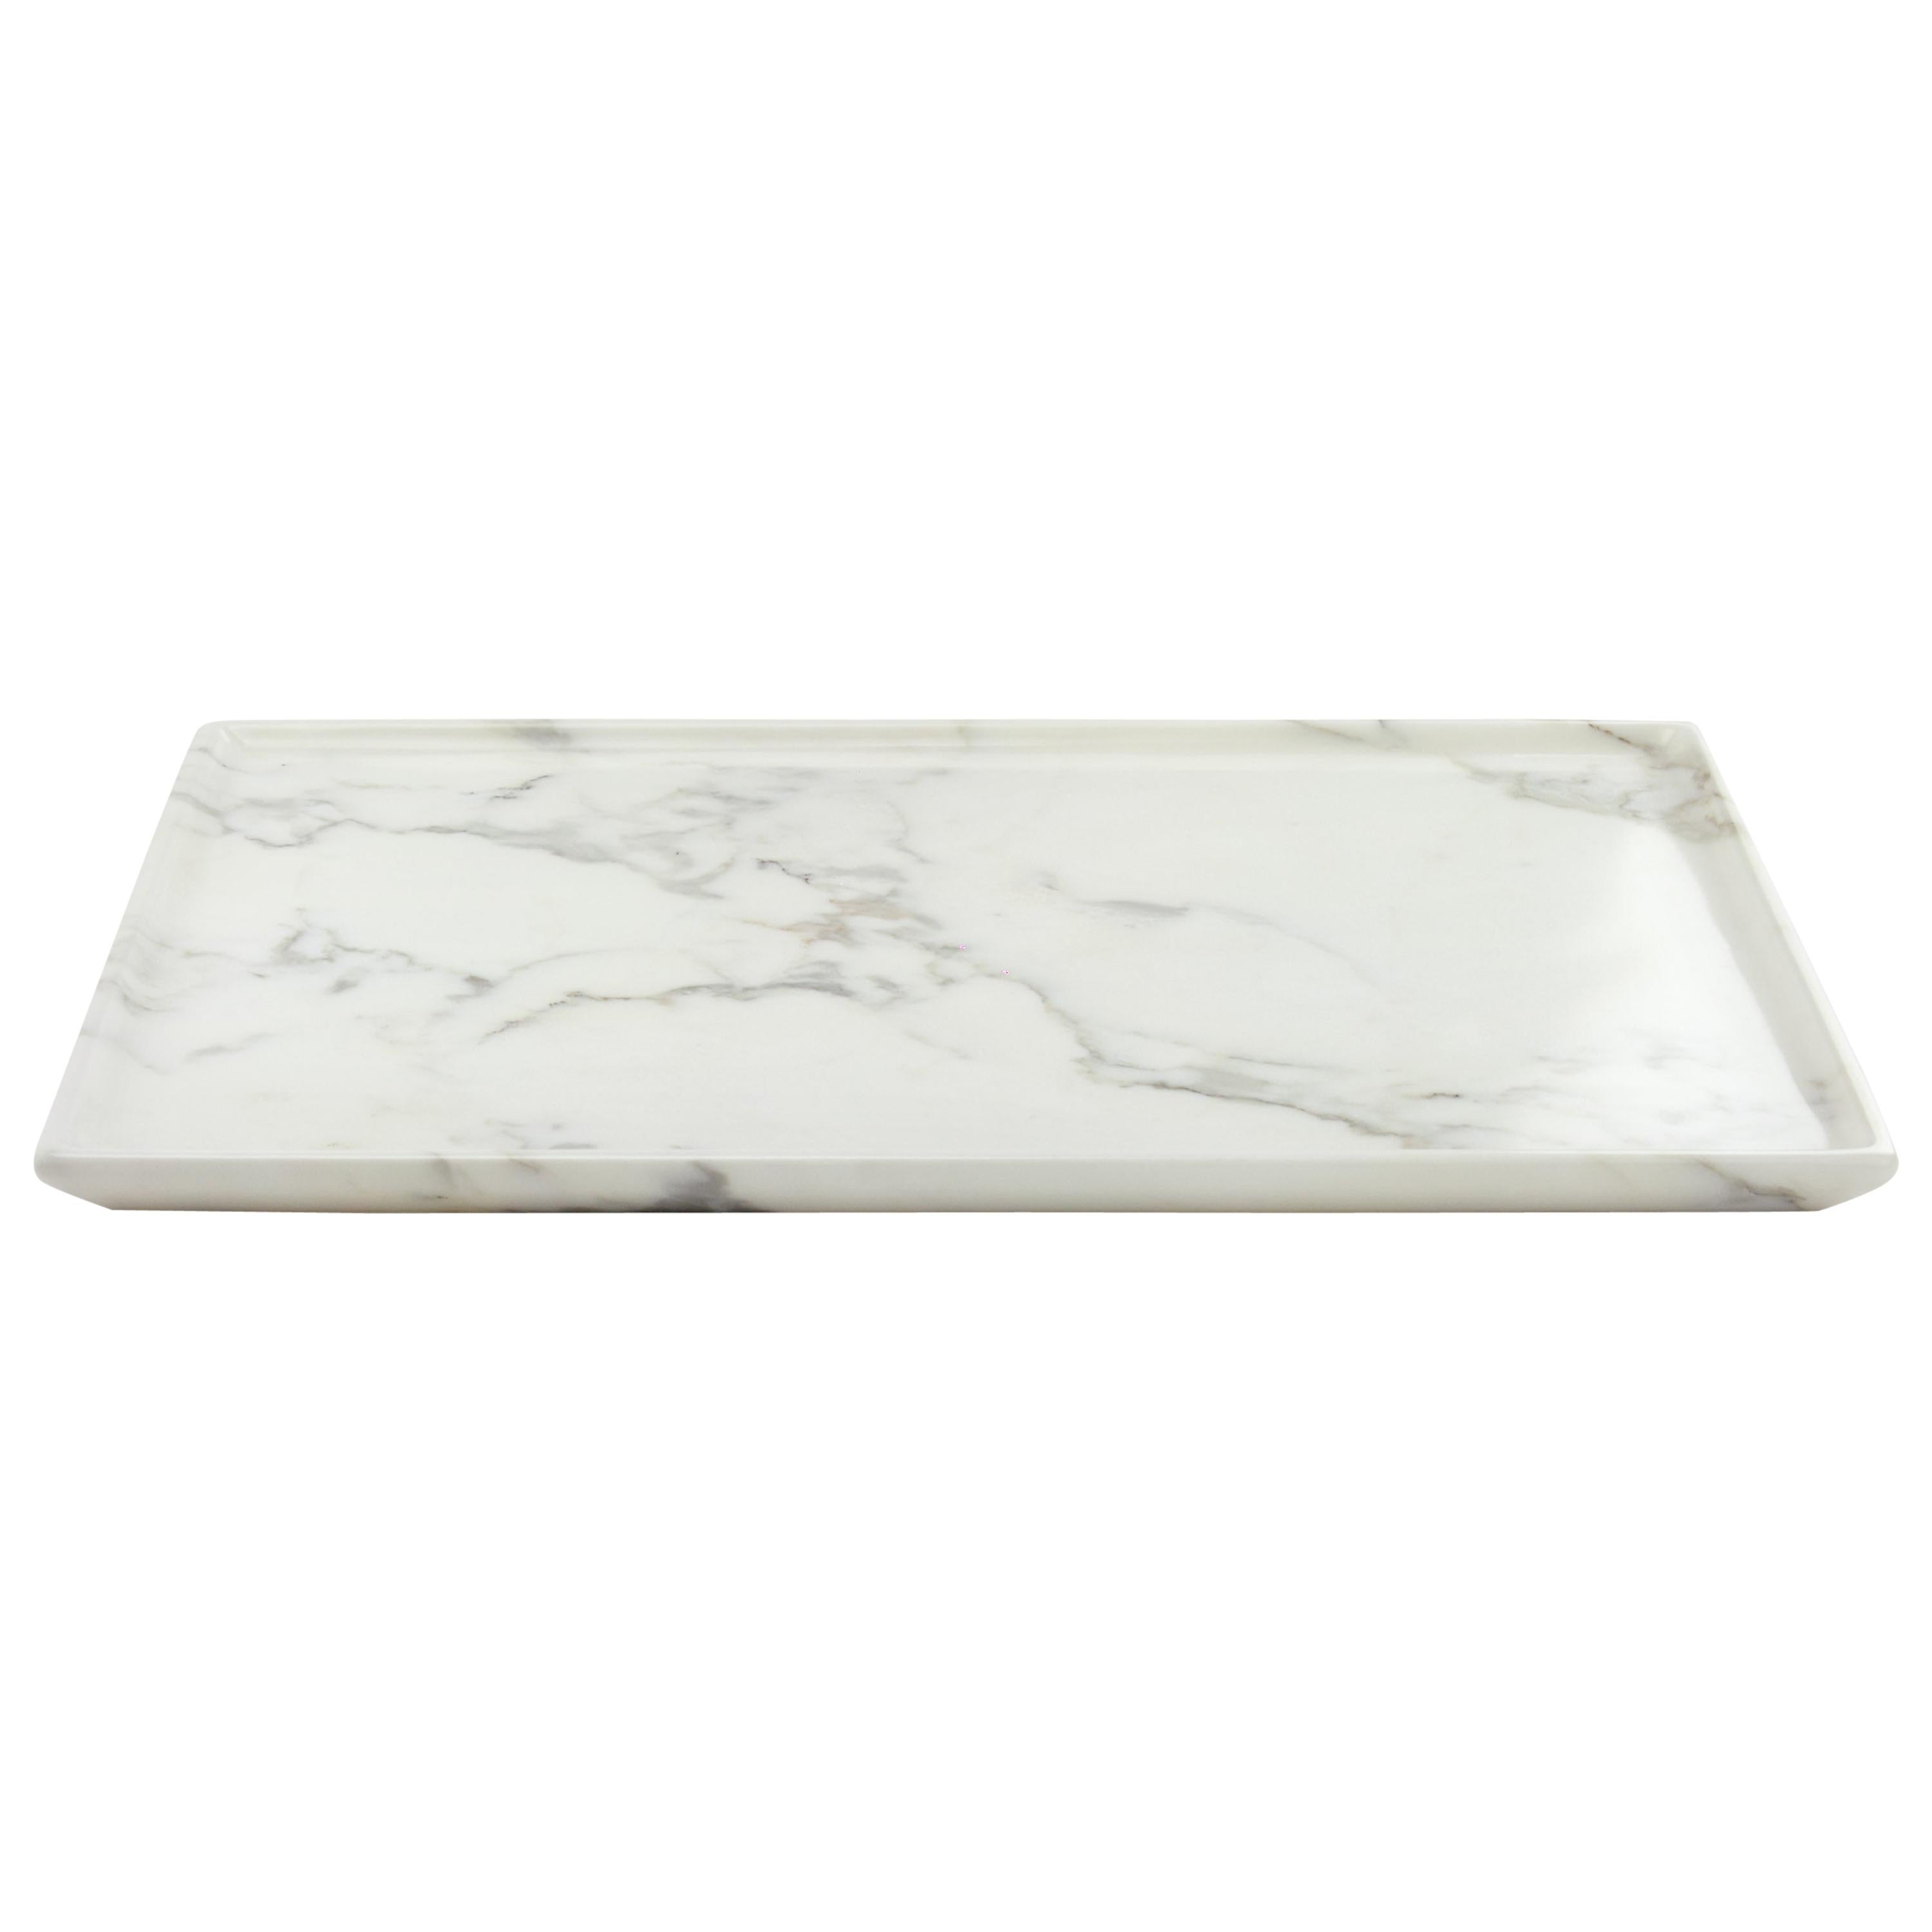 Plateau rectangulaire sculpté à la main dans un bloc de marbre blanc, fabriqué en Italie